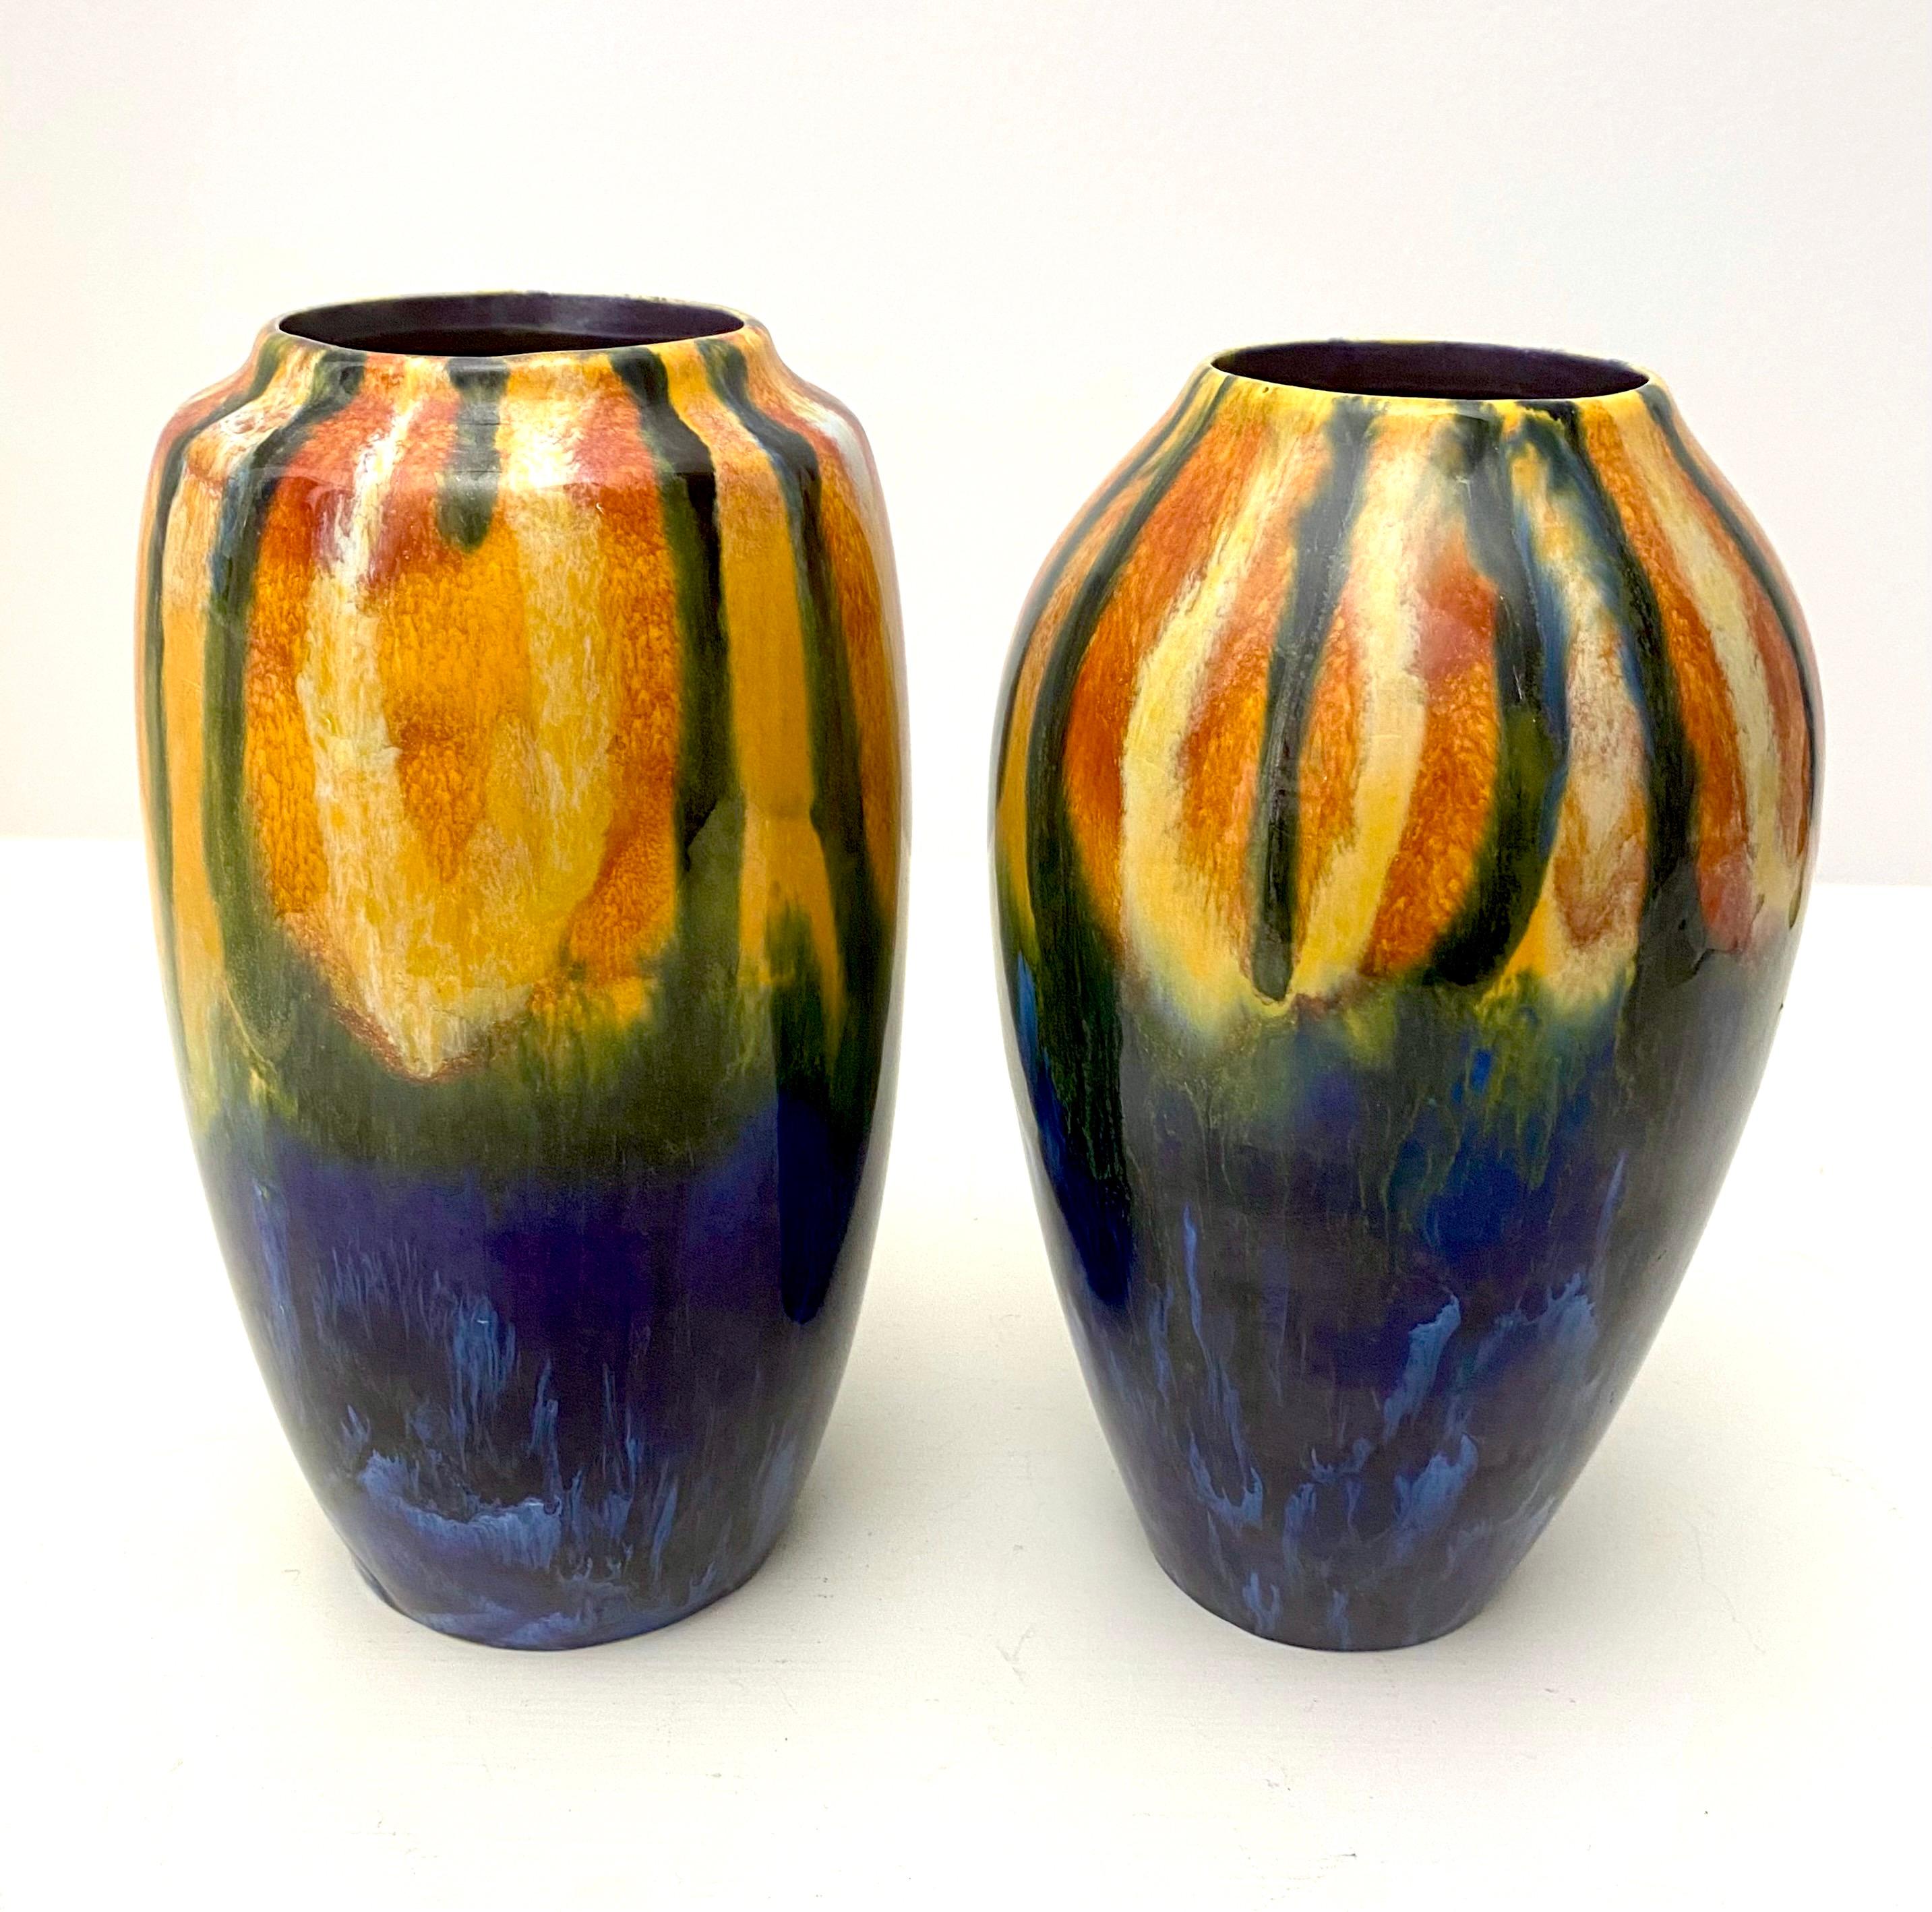 Superbe paire de vases tchèques du début de l'année en cobalt, orange, vert, marron et jaune par Coronet. Une grande fête visuelle pour les collectionneurs du début du 20e siècle. Chaque vase est signé sur le fond et la forme et la taille de